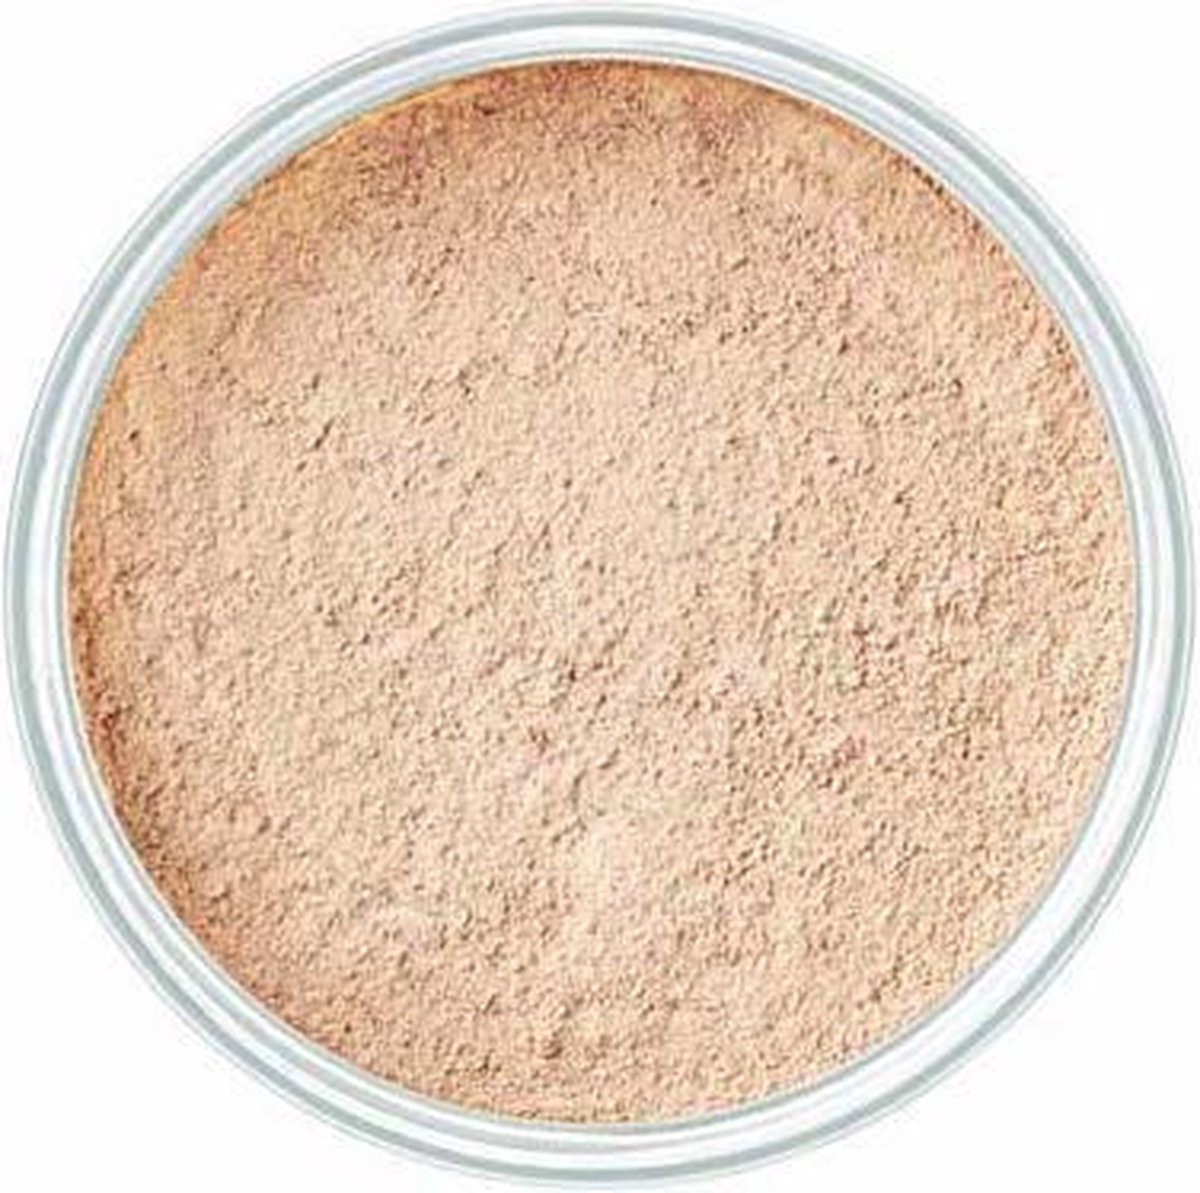 Artdeco mineral powder foundation 4 Light Beige - Artdeco Make-up